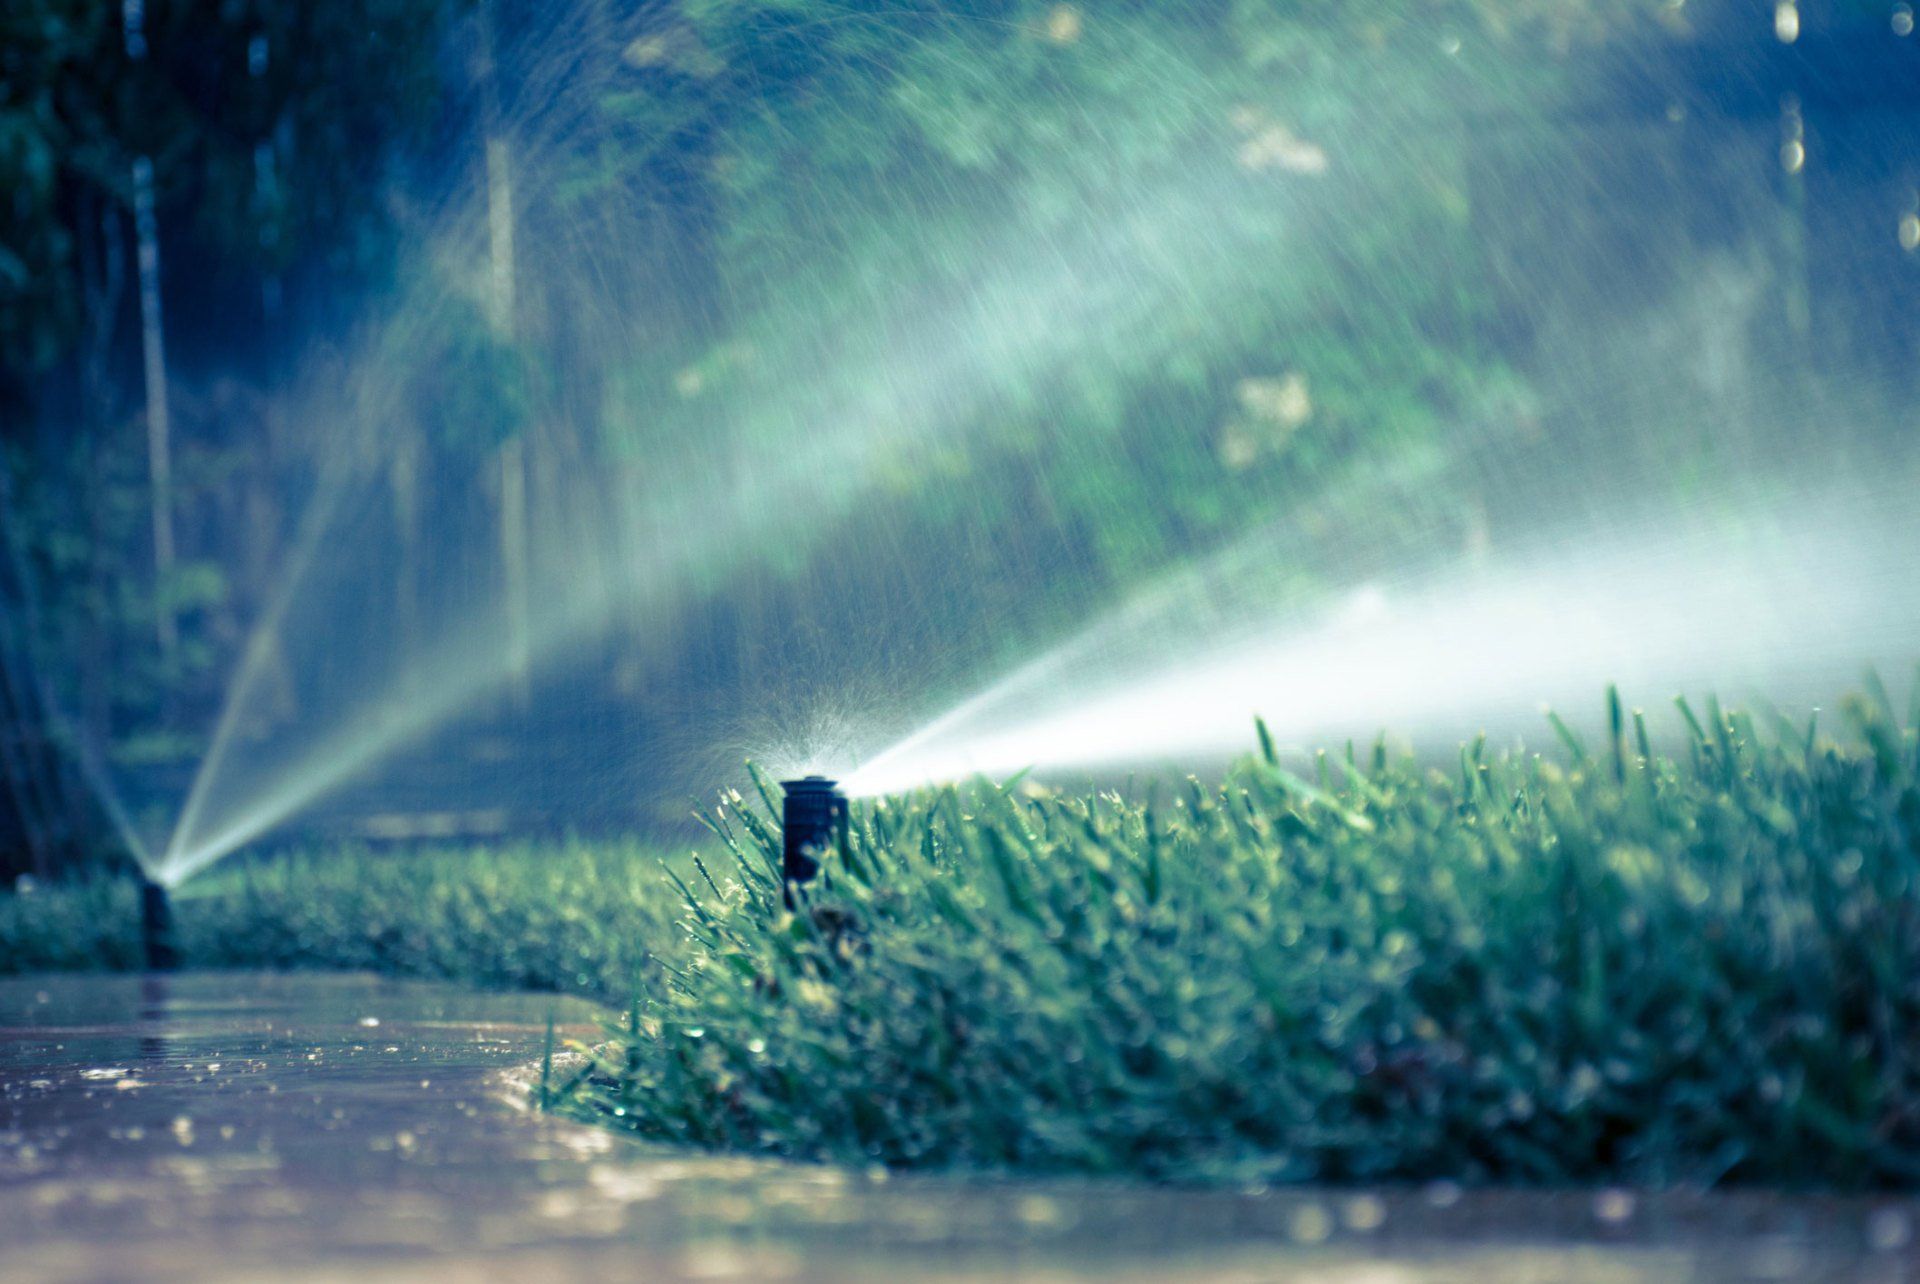 Sprinkler System — Garden Sprinkler In Action in Colorado Springs, CO